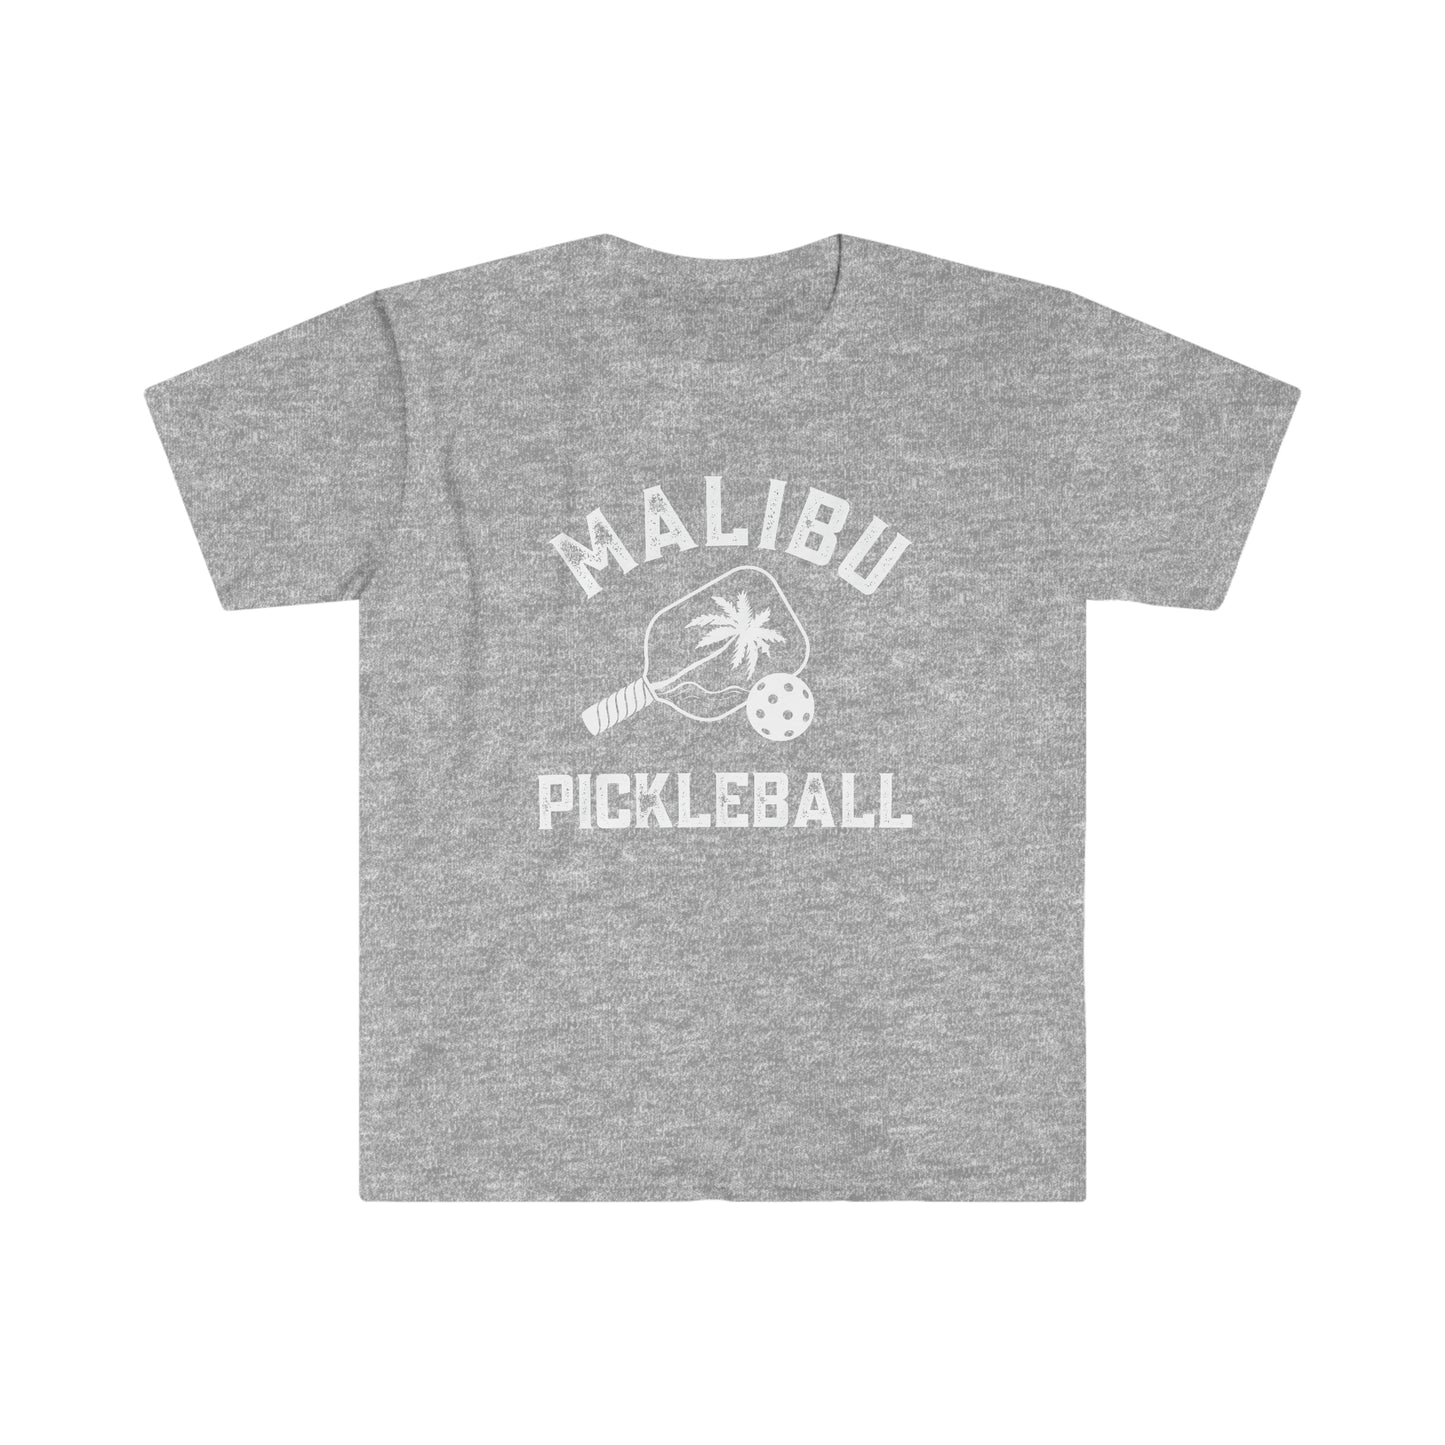 Malibu Pickleball - Unisex Softstyle T-Shirt